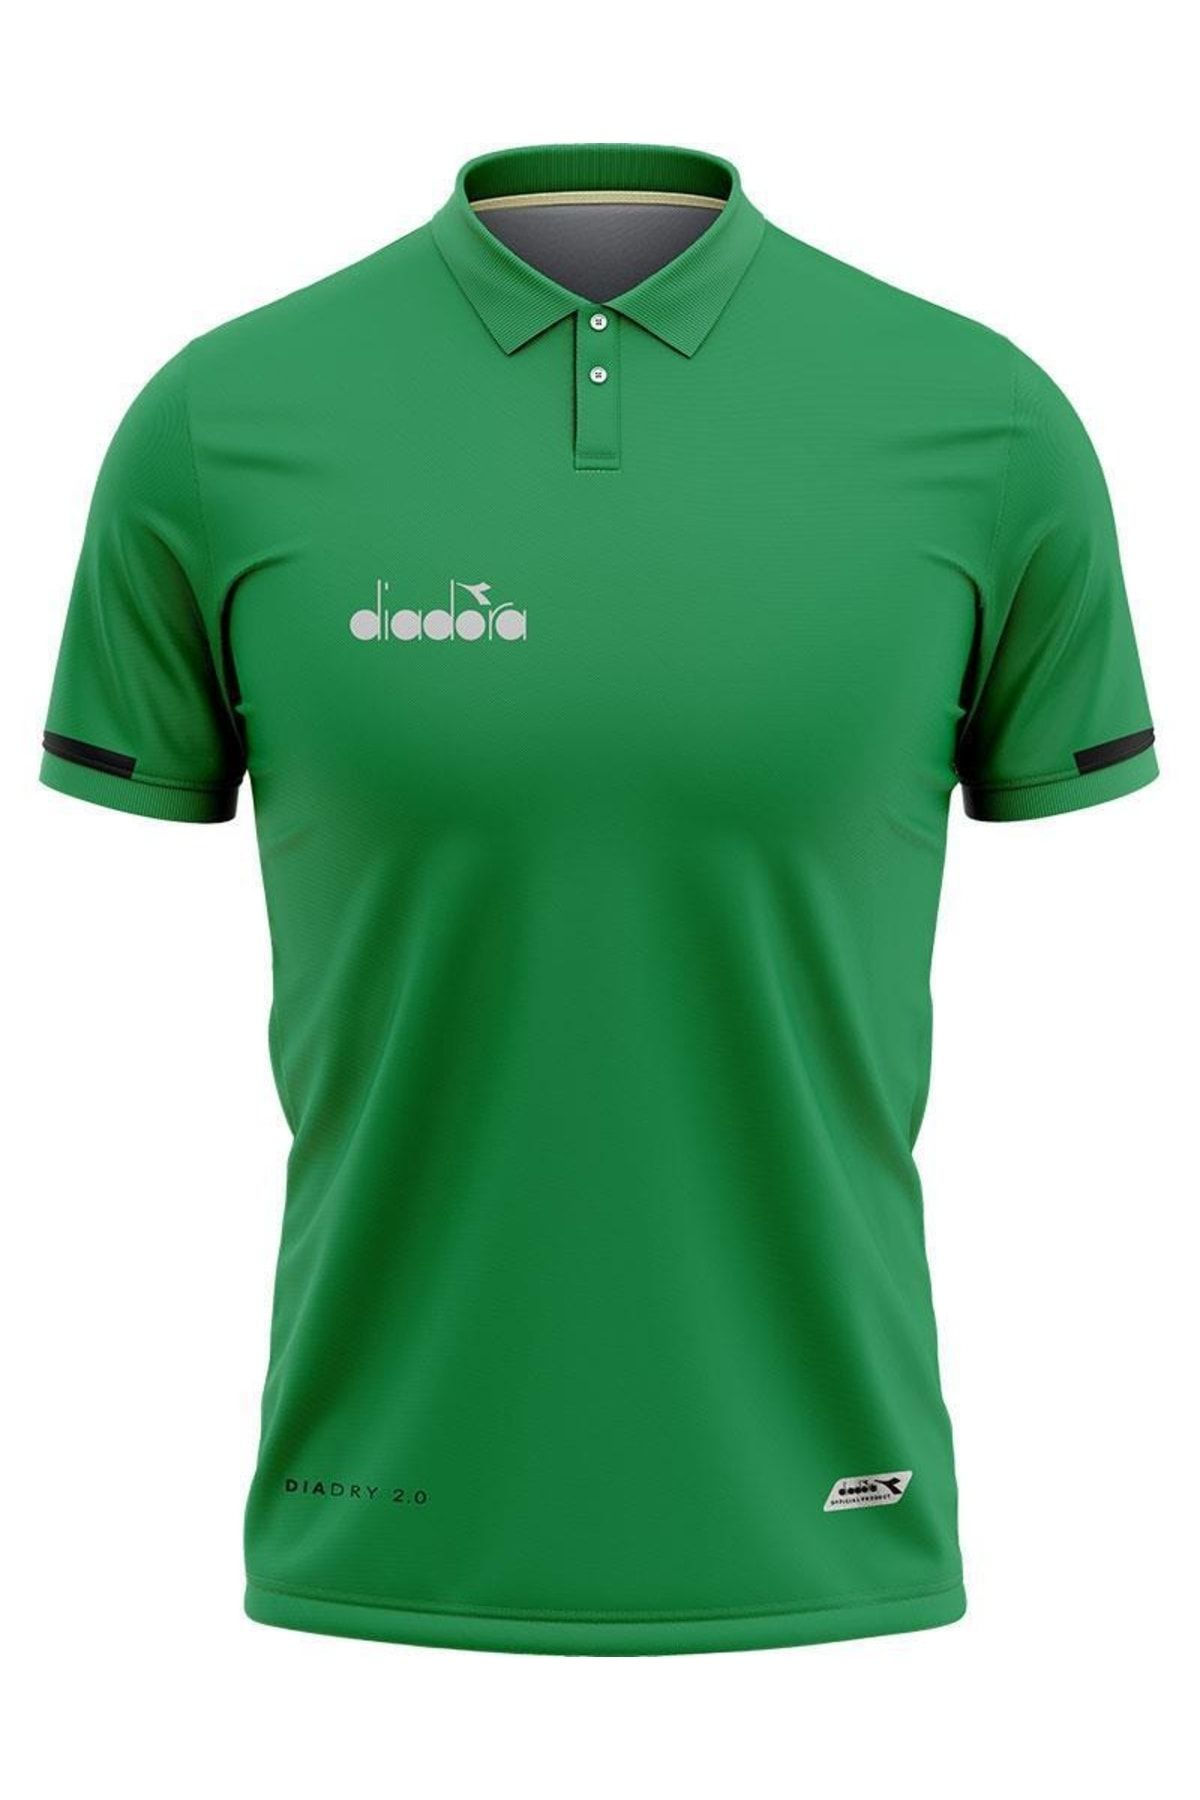 Diadora Venüs Pamuklu Kamp T-shirt Yeşil